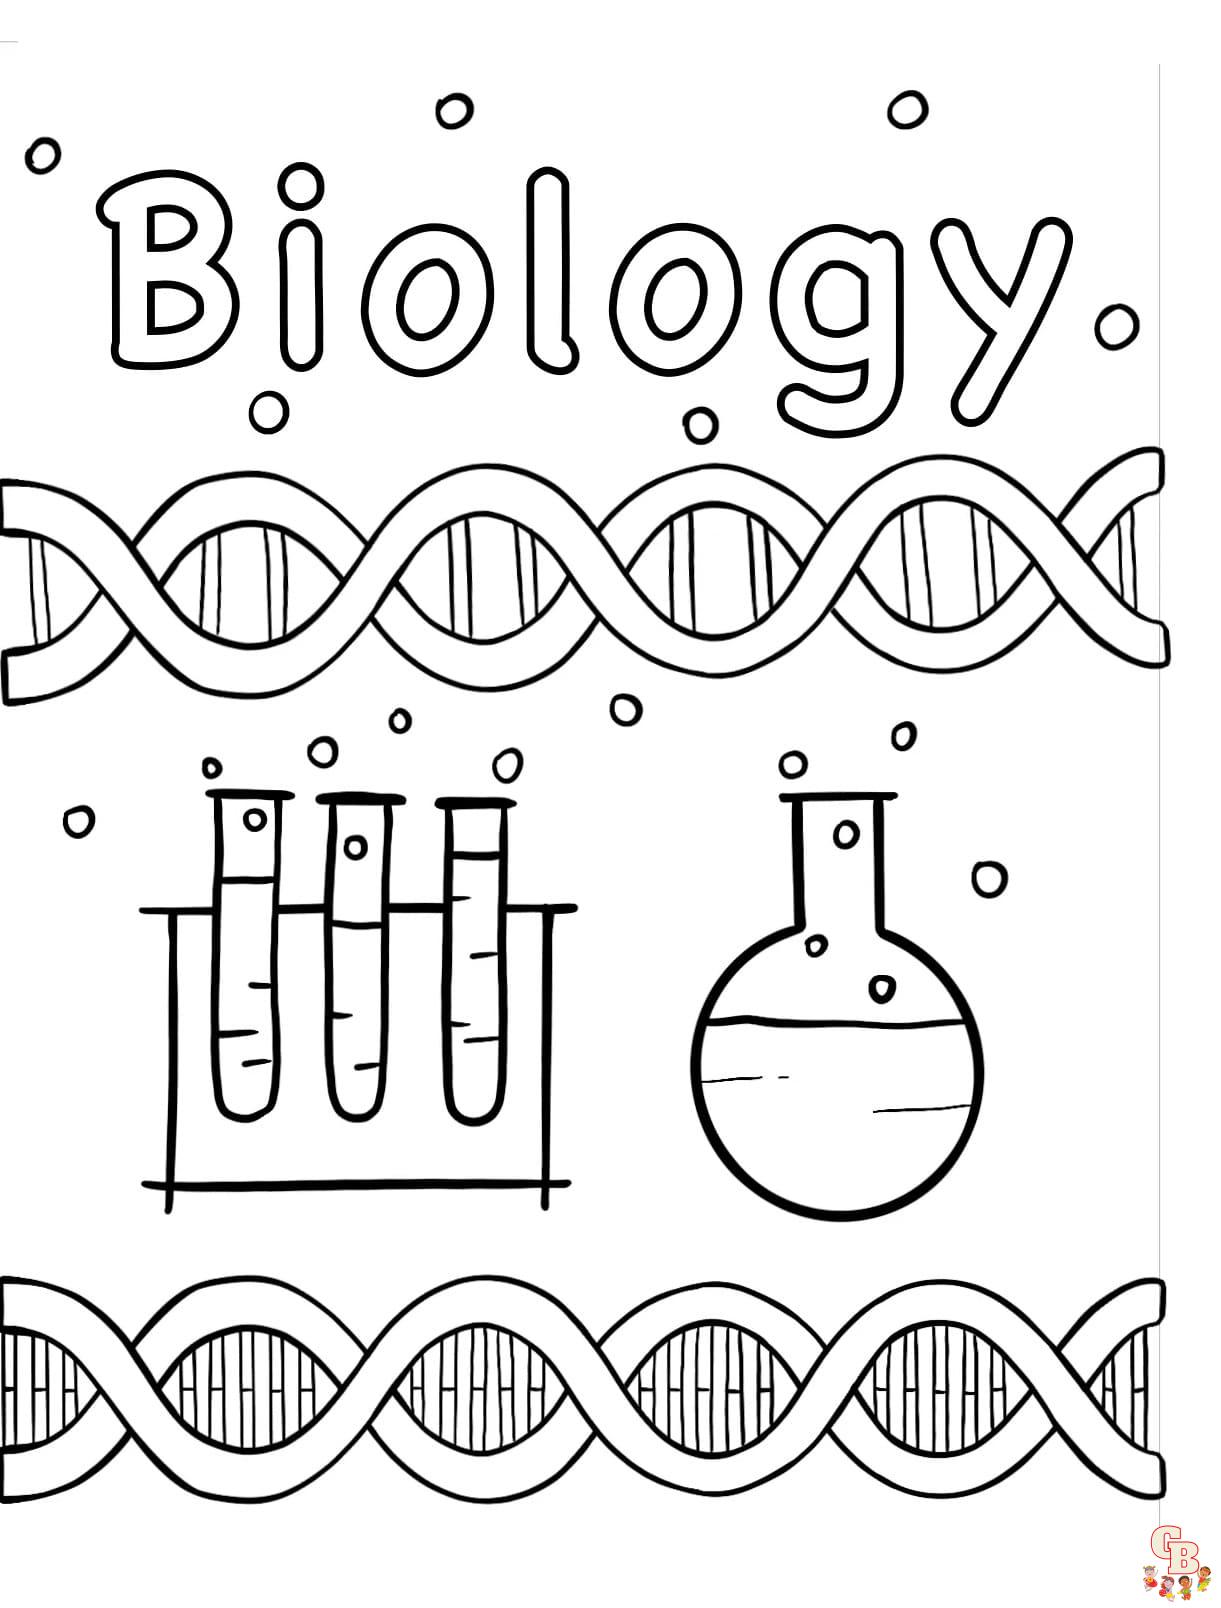 caricaturas de biologia para niños